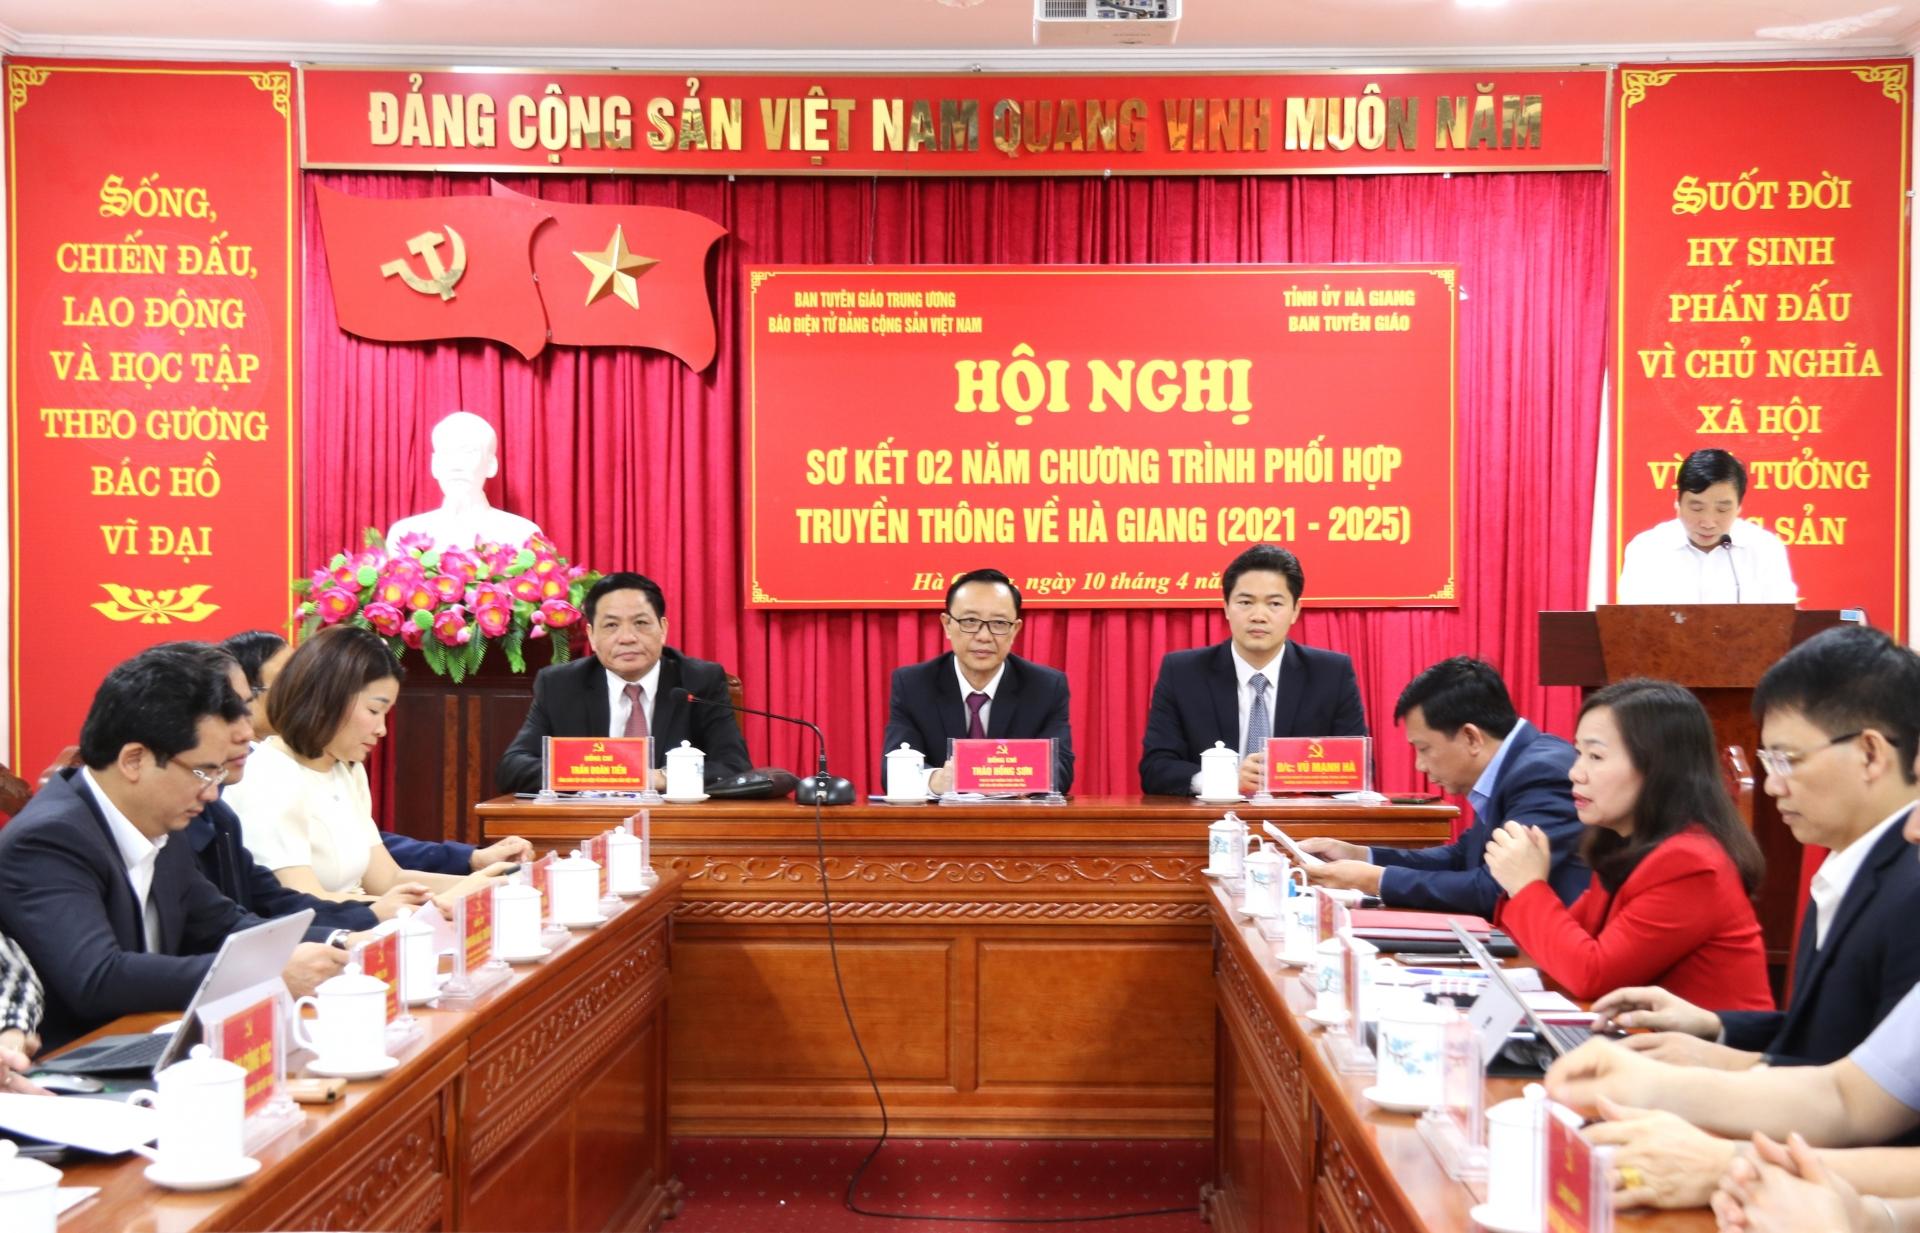 Hội nghị sơ kết 2 năm chương trình phối hợp truyền thông về Hà Giang